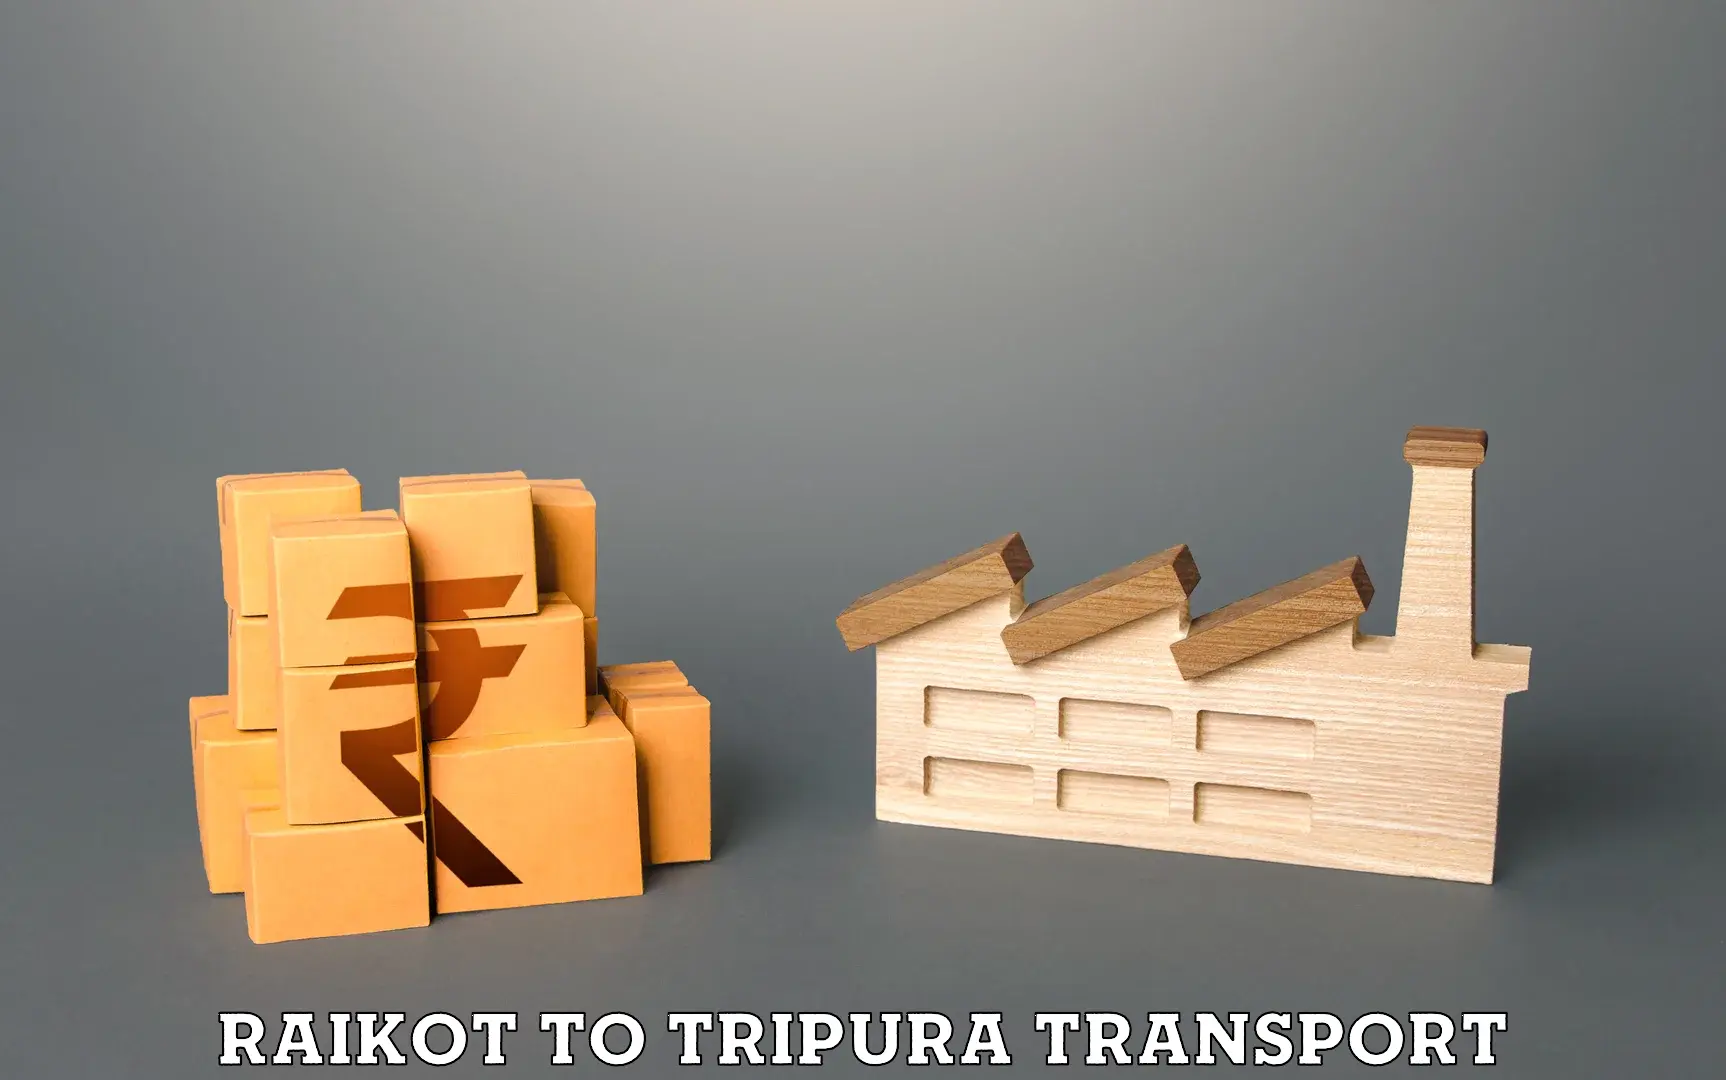 All India transport service Raikot to IIIT Agartala